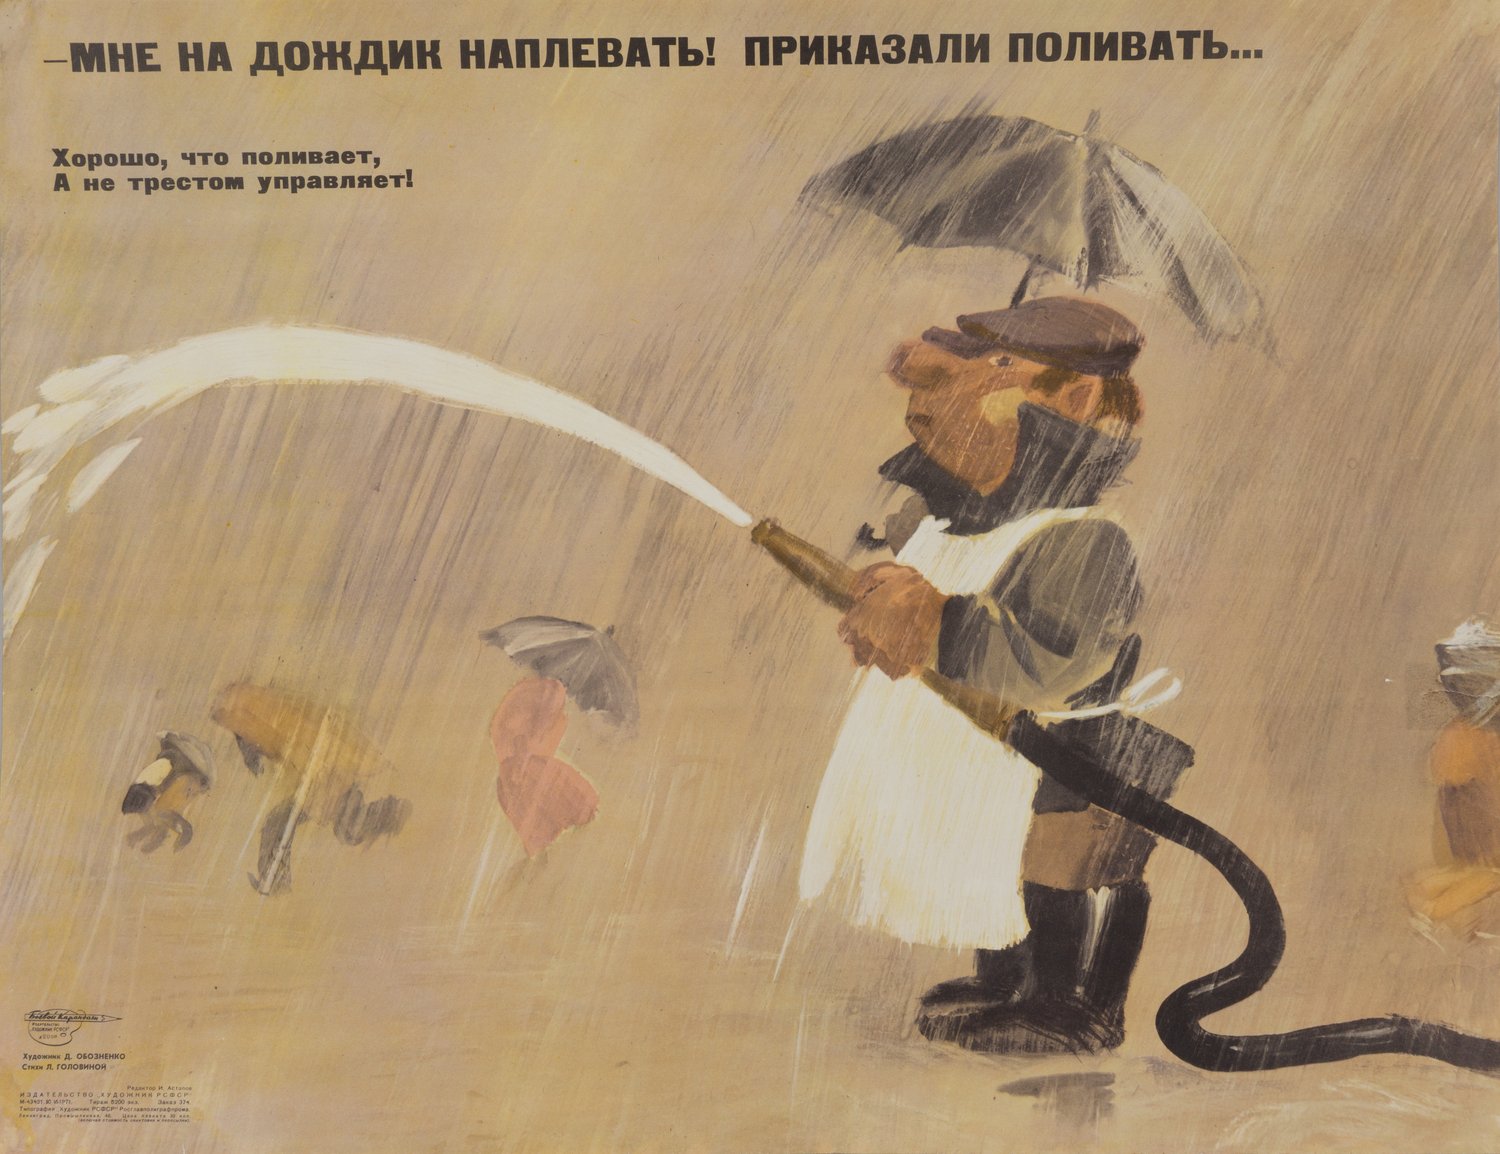 («Боевой карандаш«) Обозенко Д. Плакат «Мне на дождик наплевать! Приказали поливать...» (Л., 1971).